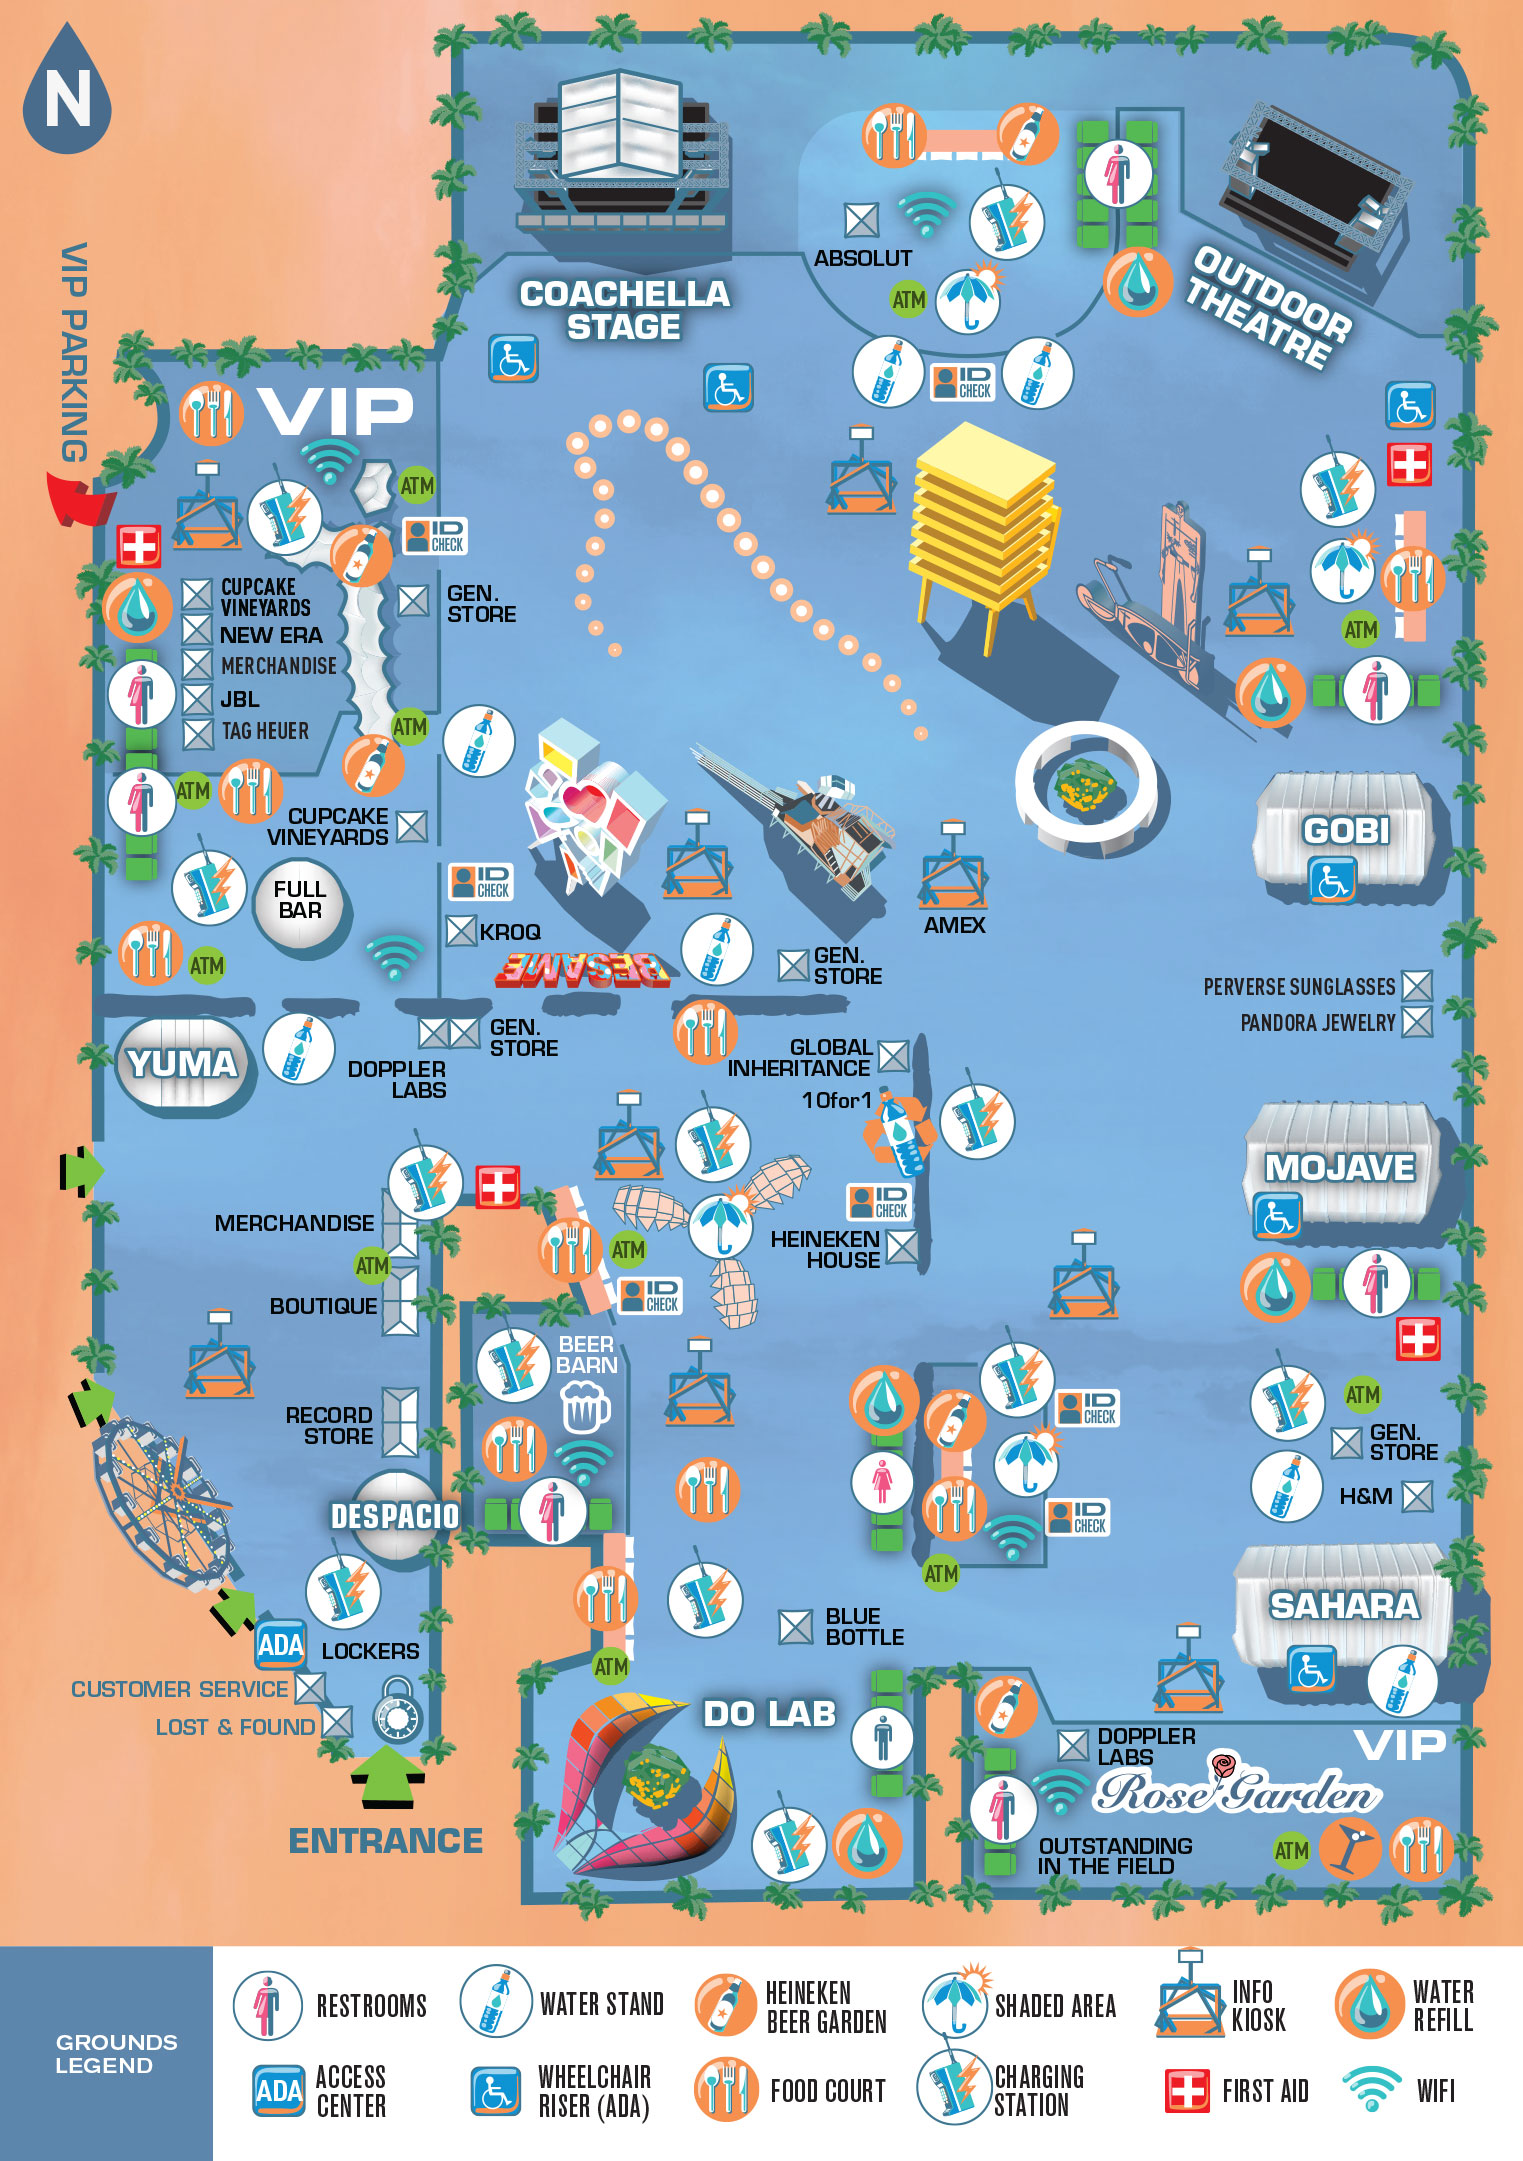 Coachella 2016 Festival Map